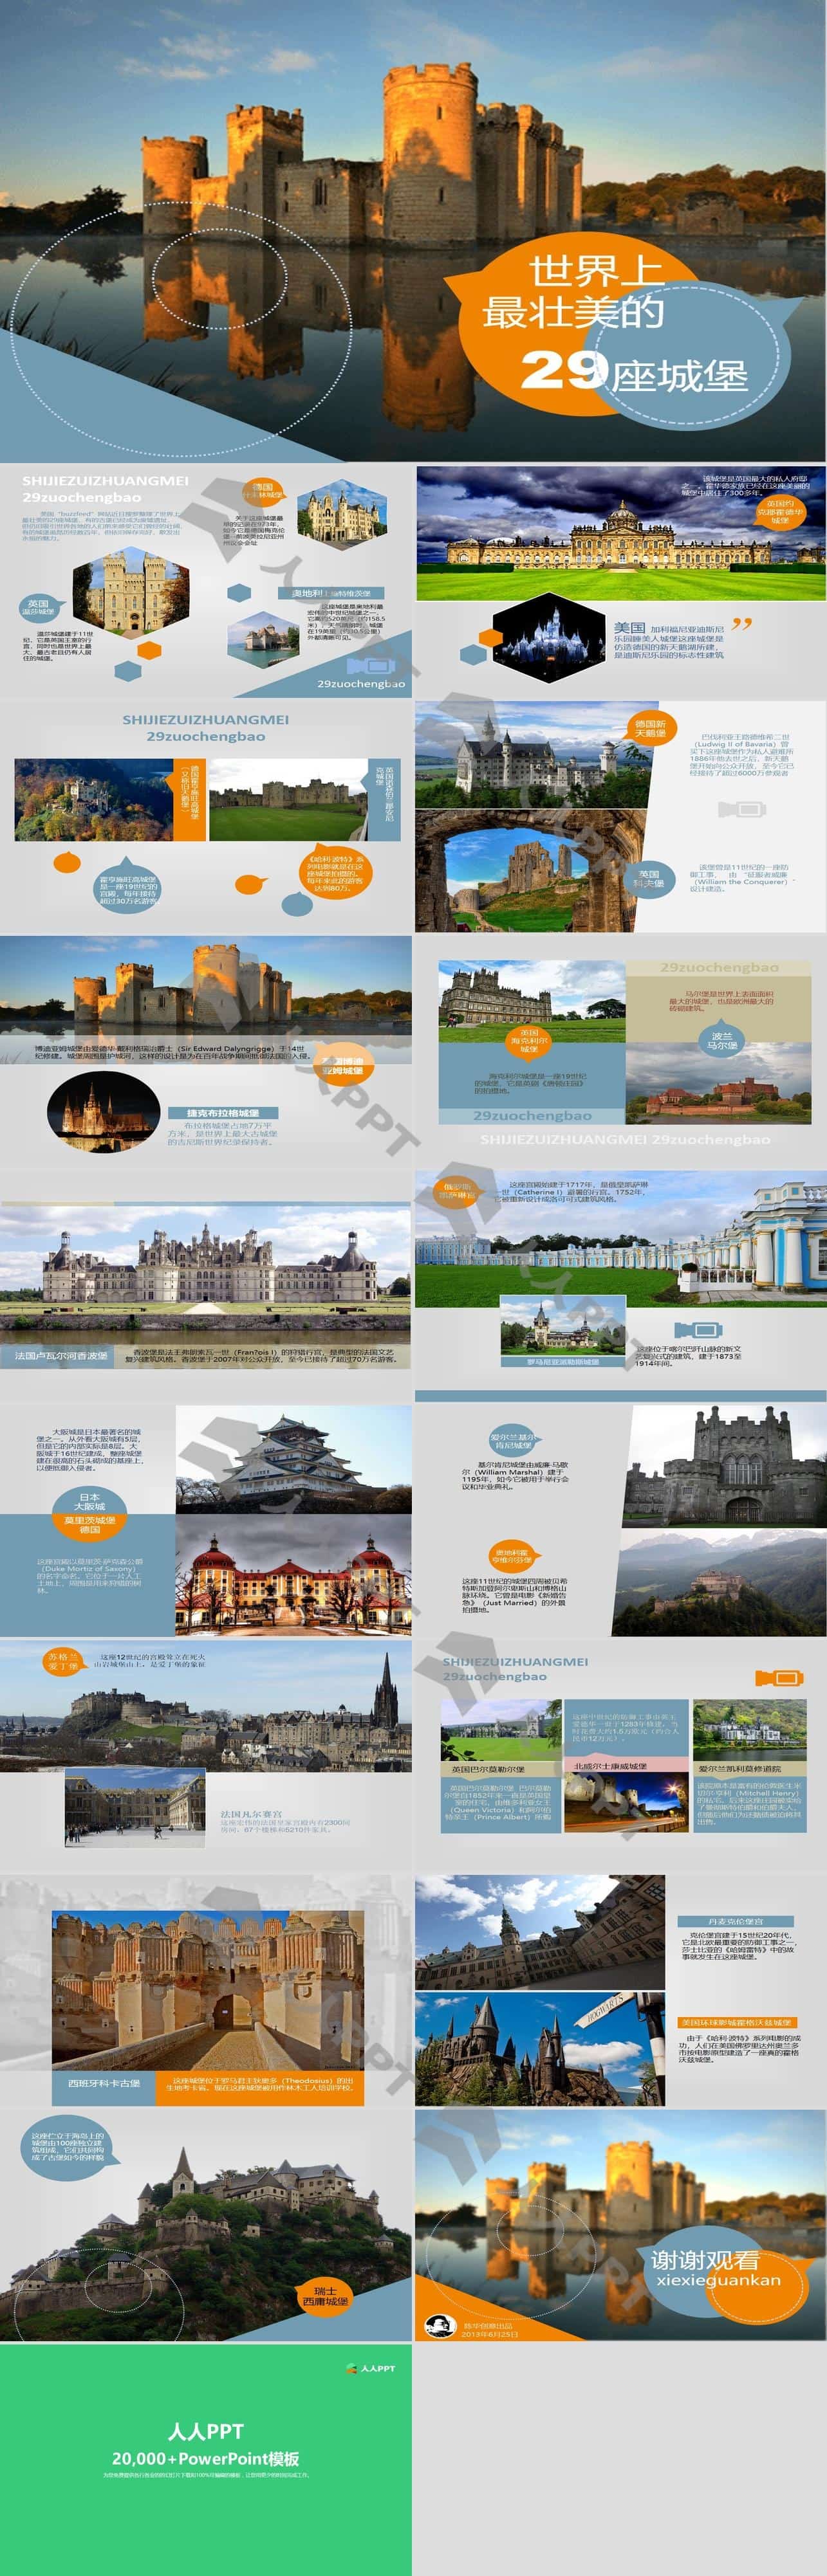 最壮美的29座城堡介绍PPT长图